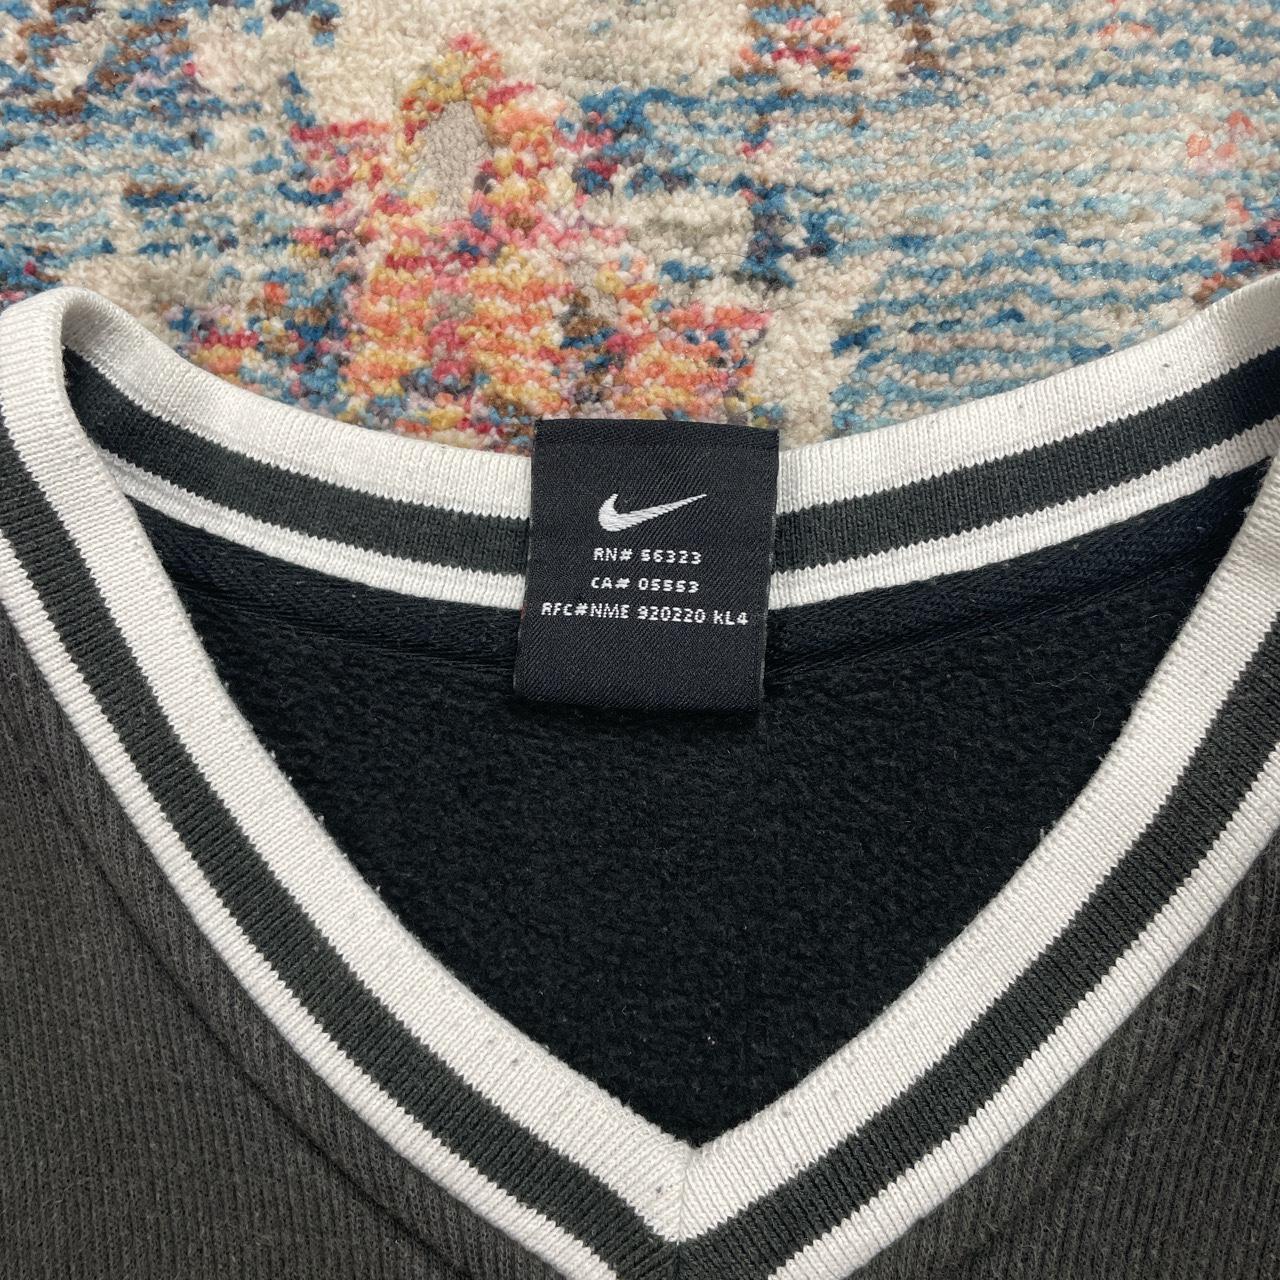 Vintage Nike Black Uptempo Sweatshirt